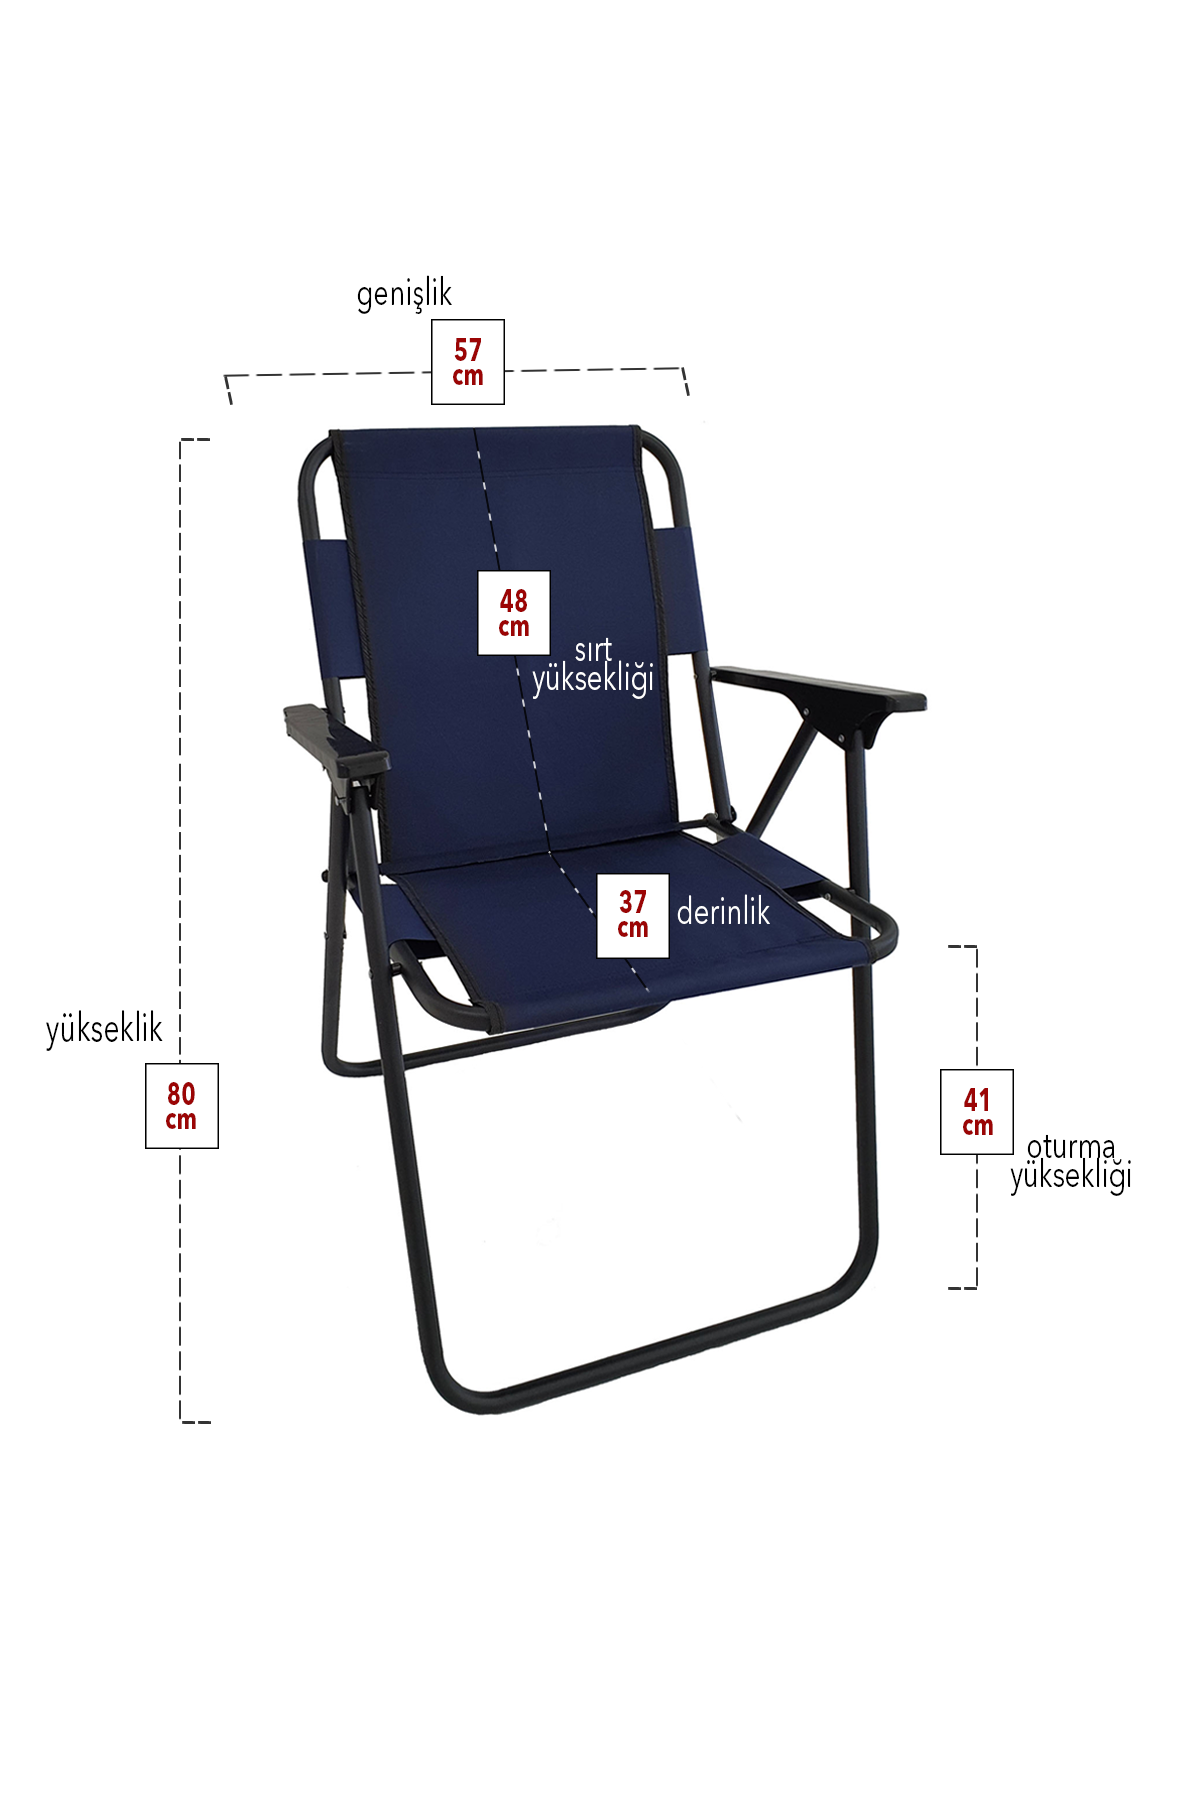 Bofigo 3 Pcs Camping Chair Folding Chair Picnic Chair Beach Chair Navy Blue